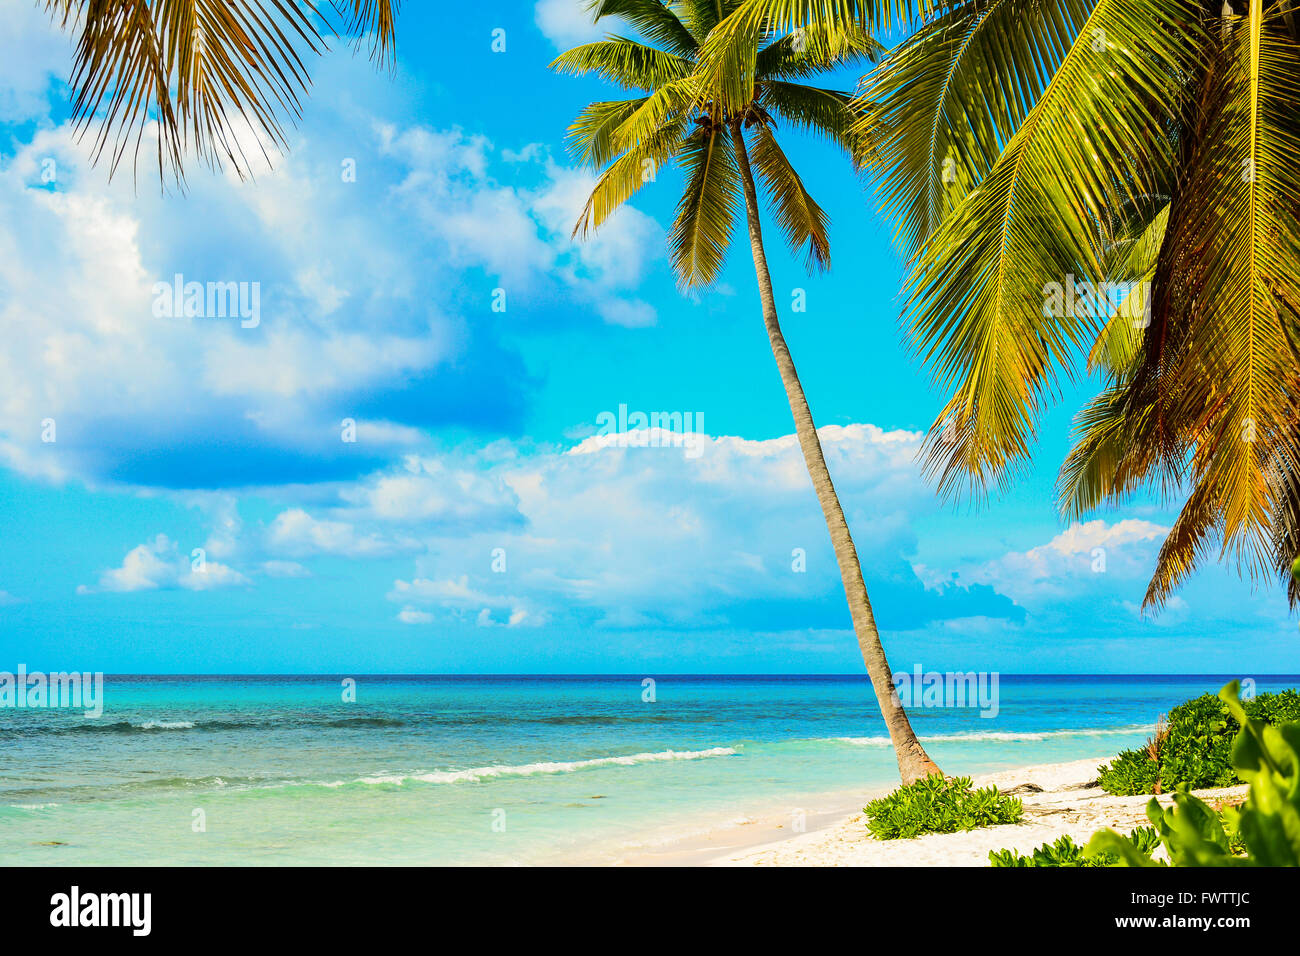 Palmiers sur la plage de sable blanc. La côte de la mer des Caraïbes, la République dominicaine, l'île de Saona landscape Banque D'Images